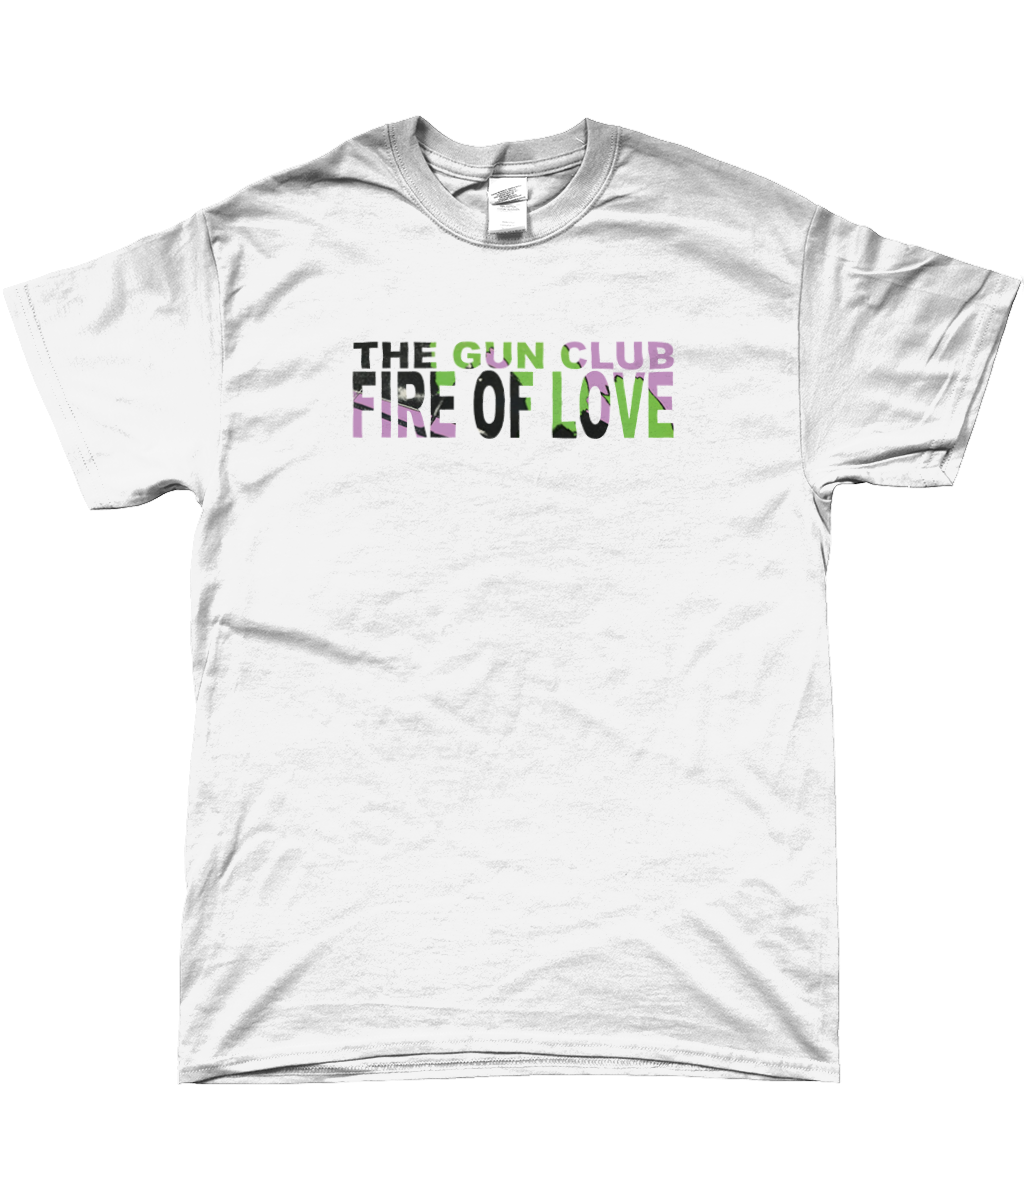 The Gun Club Fire of Love t-shirt